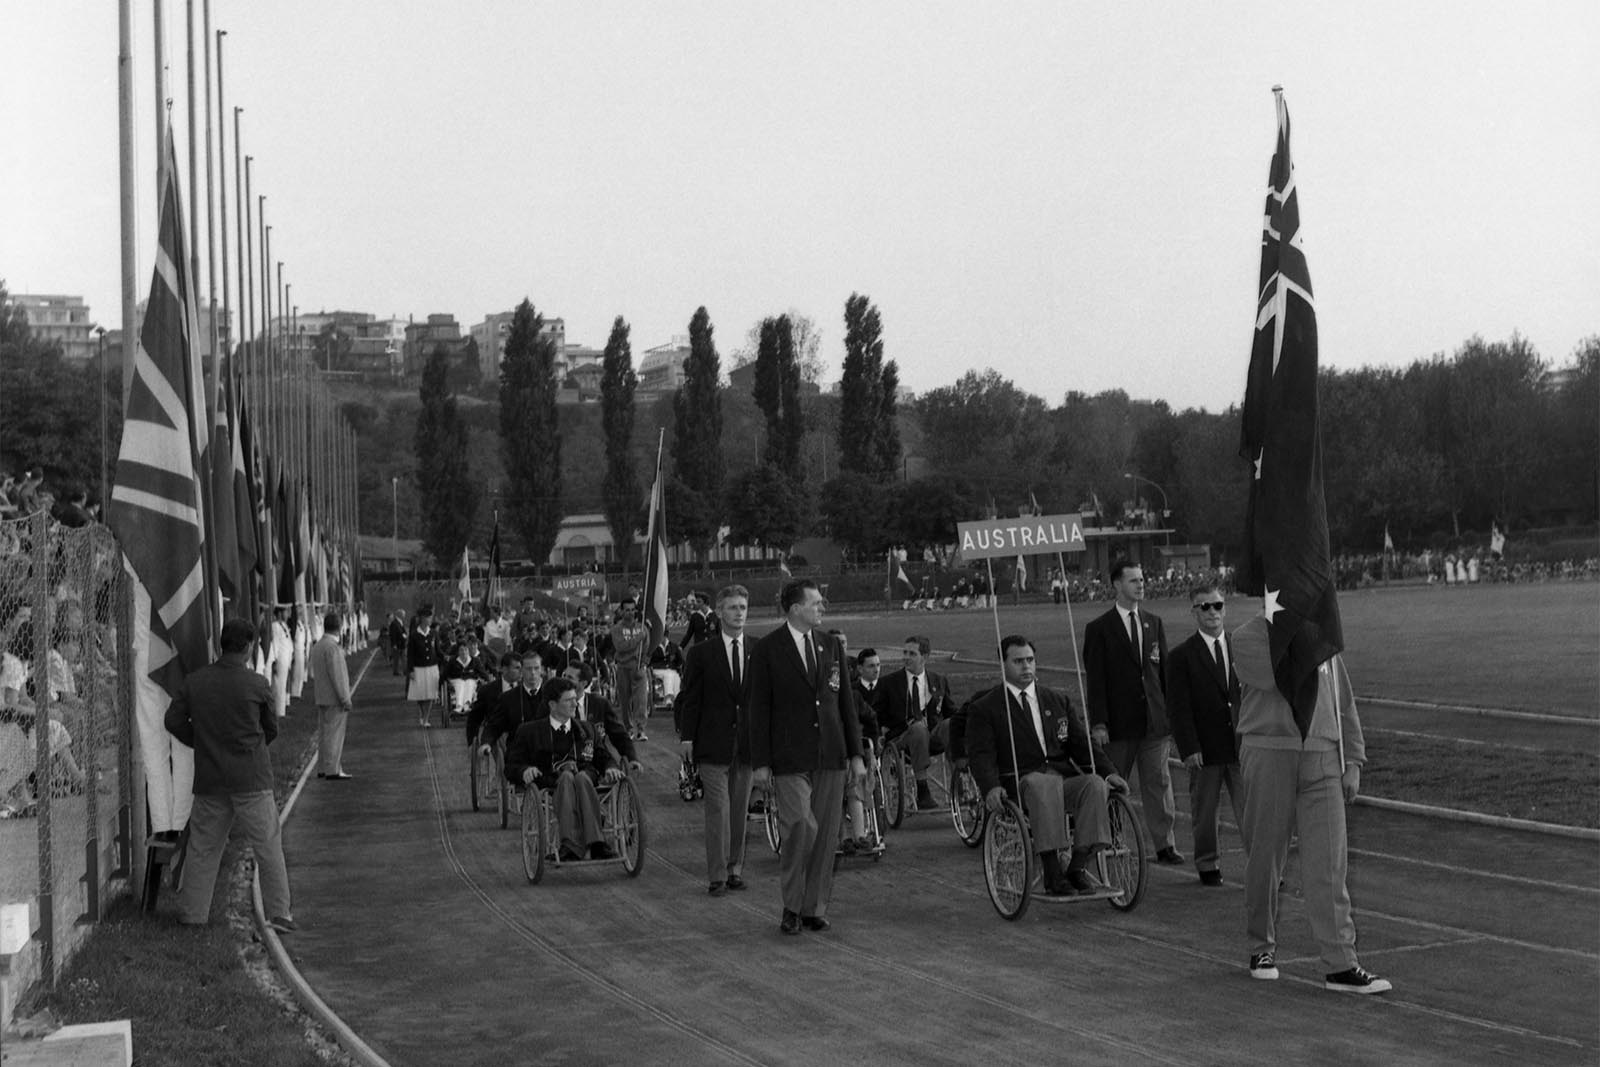 احتفال افتتاح النسخة الأولى من الألعاب البارالمبية في روما 1960 بمشاركة 400 رياضي ورياضية من 23 دولة (تصوير: AP Photo/Walter Attenni)